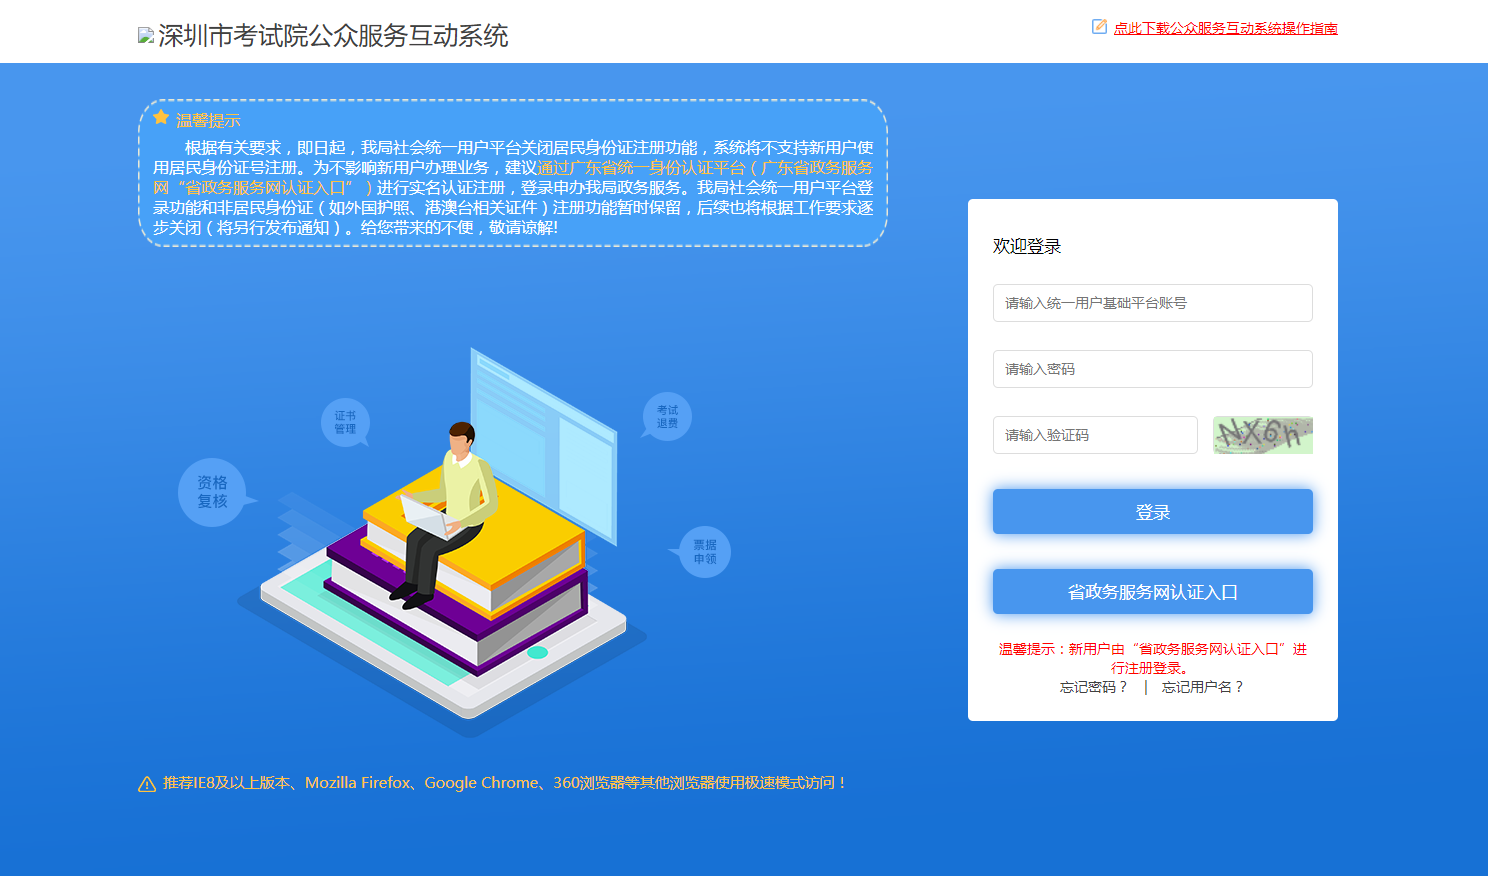 深圳市考试院公众服务互动系统